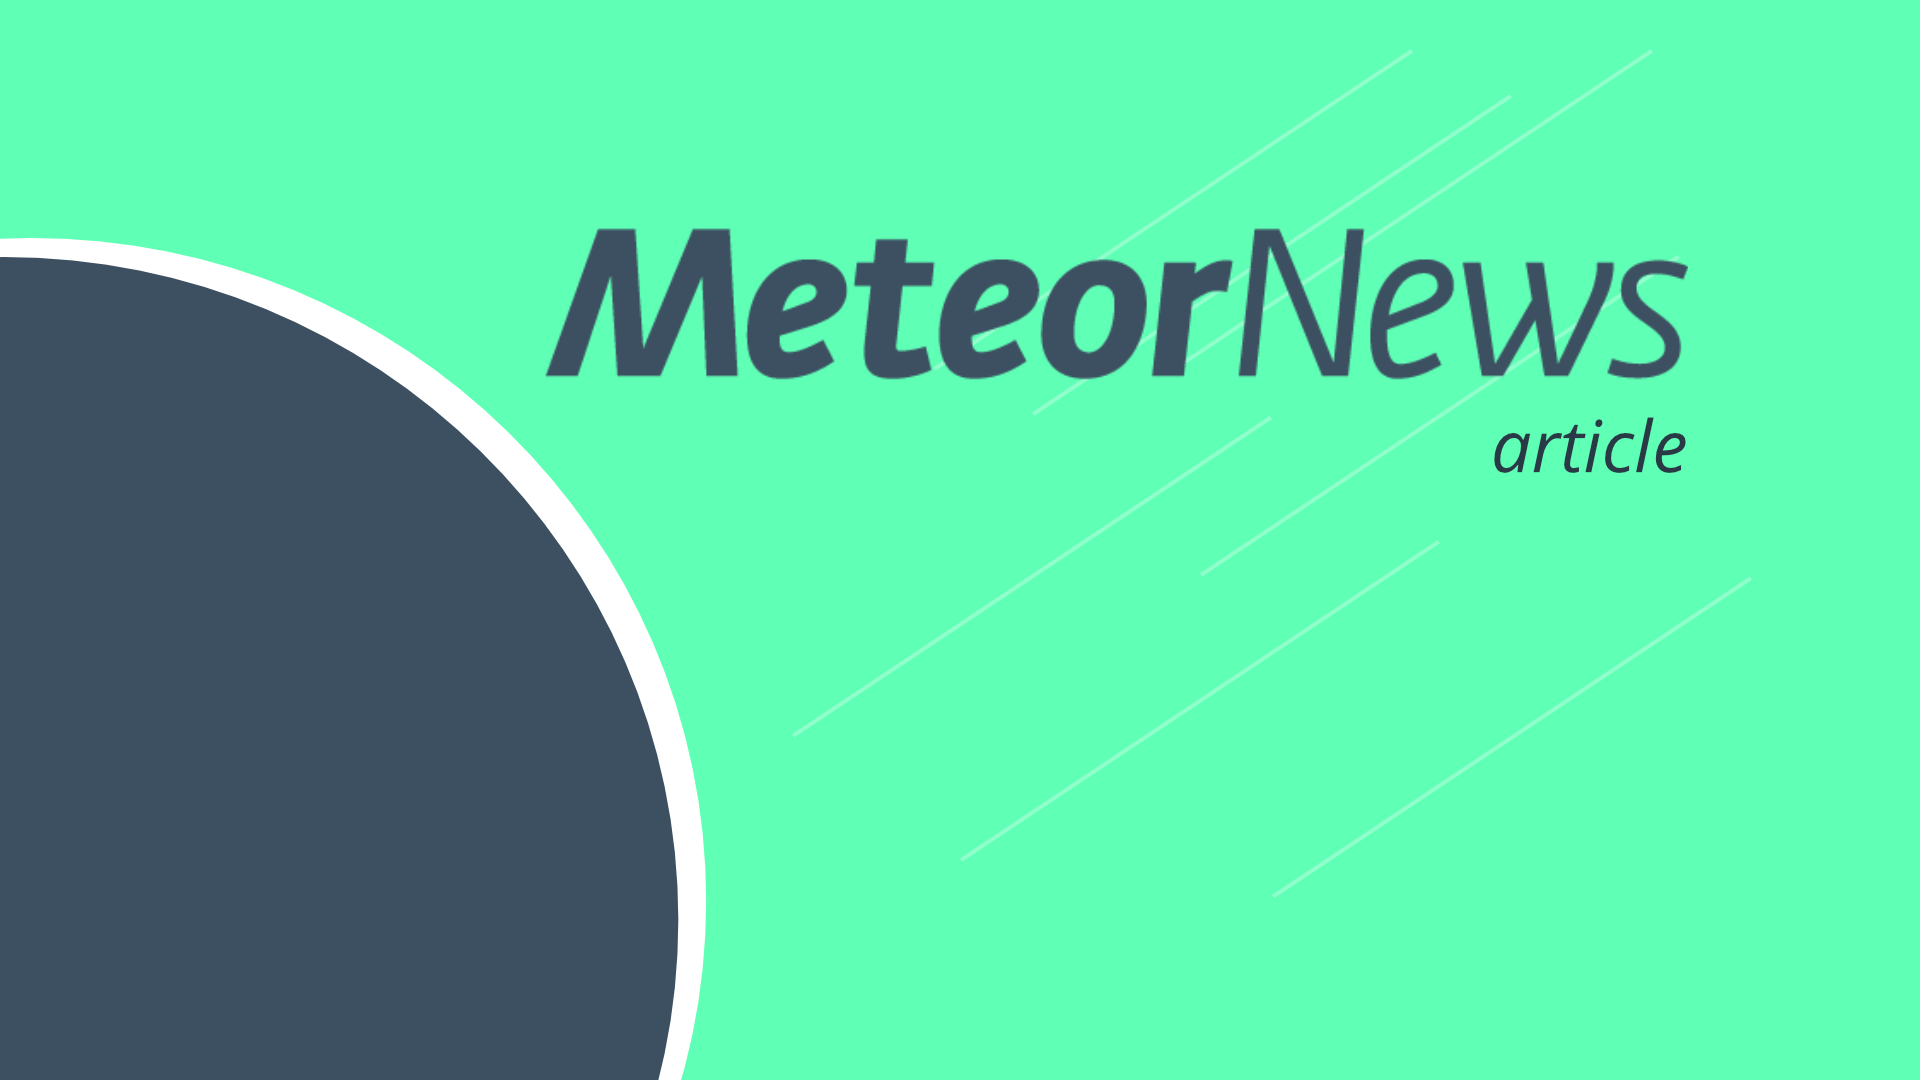 www.meteornews.net